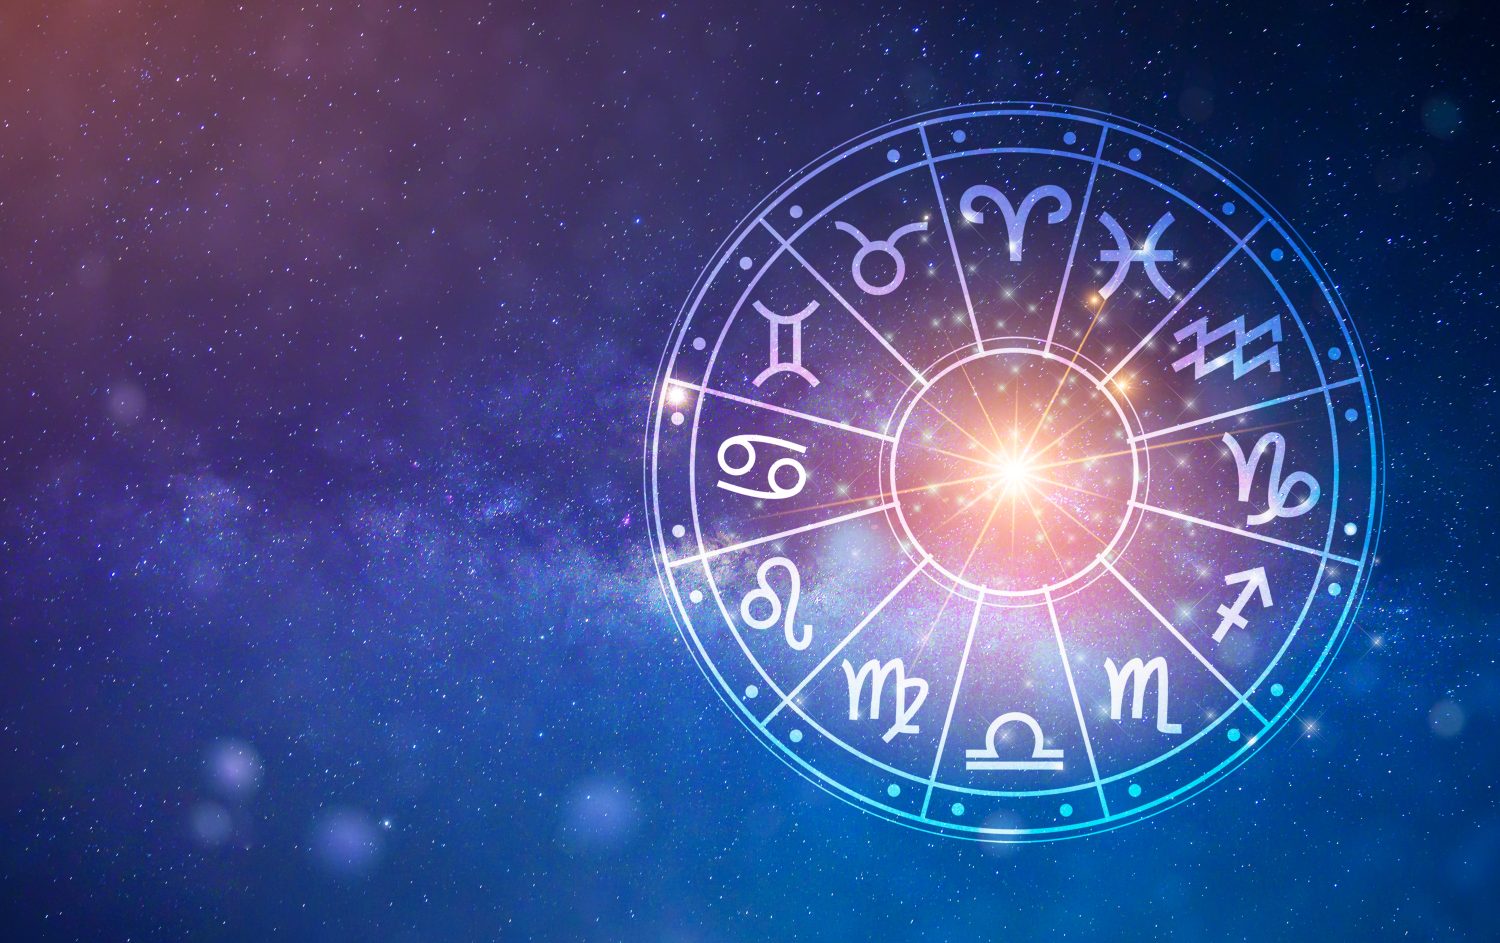 Segni zodiacali all'interno del cerchio dell'oroscopo.  Astrologia nel cielo con molte stelle e lune concetto di astrologia e oroscopi